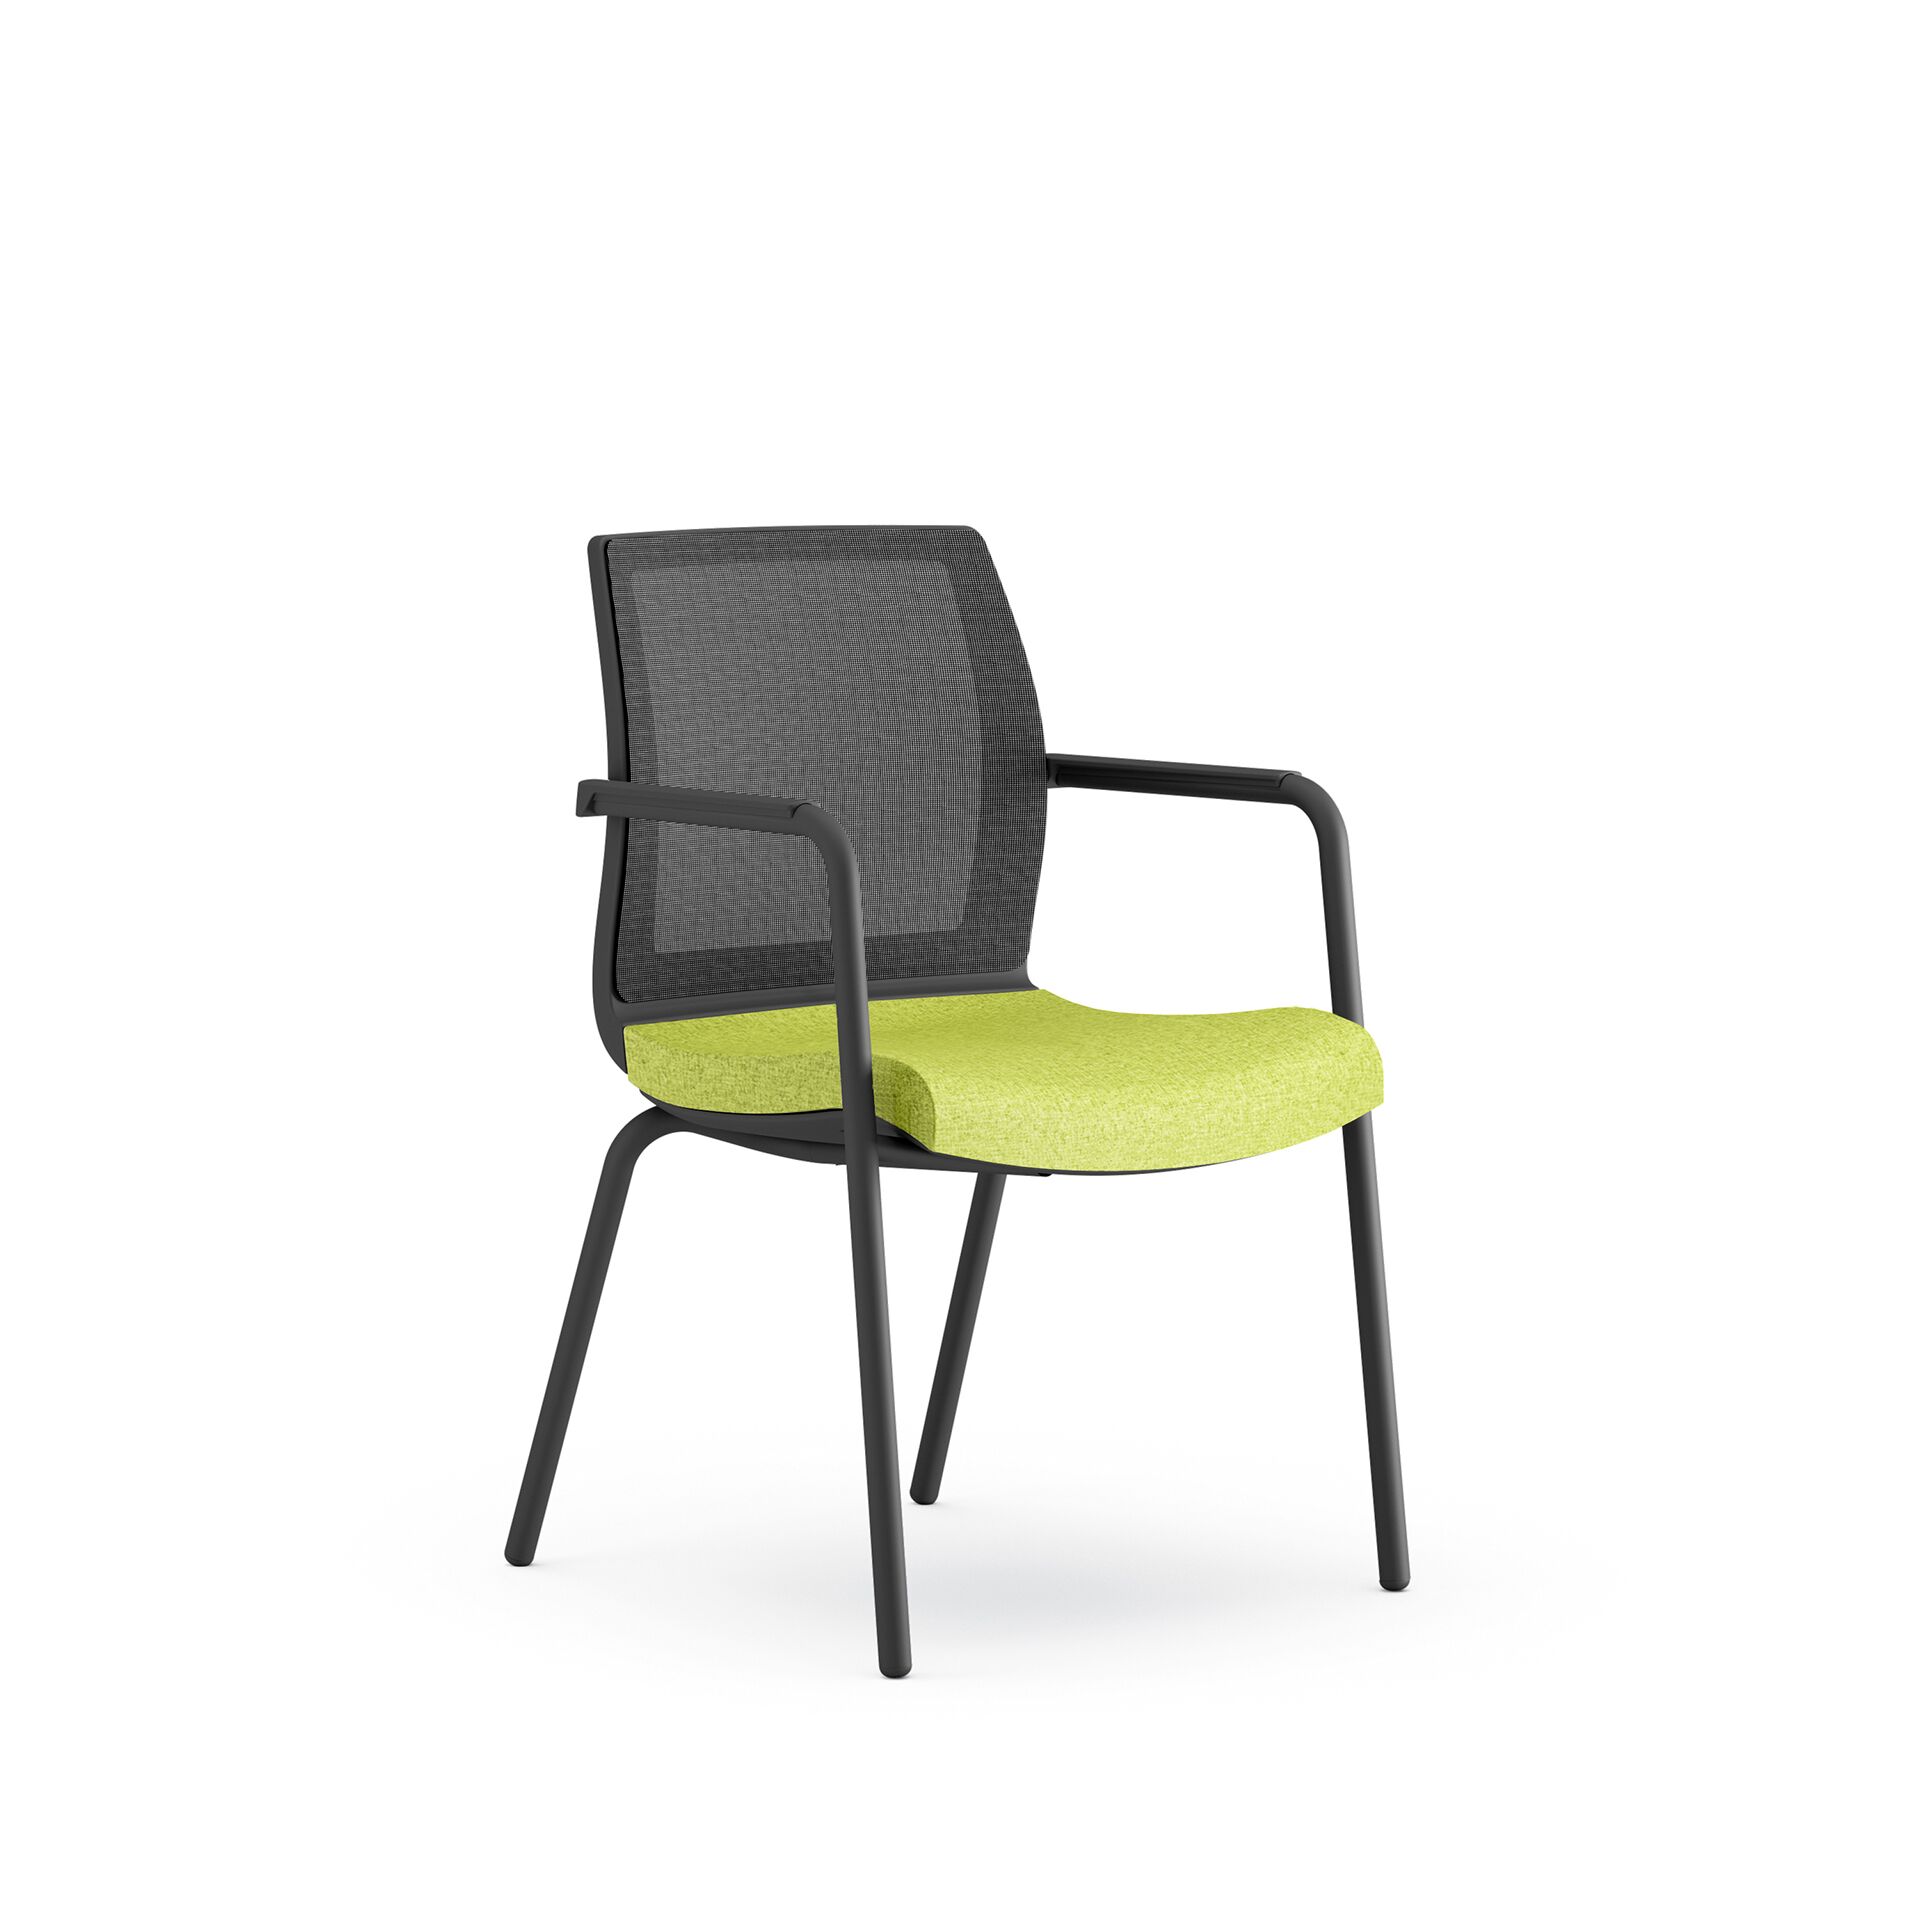 Czarne krzesło biurowe z zielonym siedziskiem smart meeting po skosie od przodu B-Group